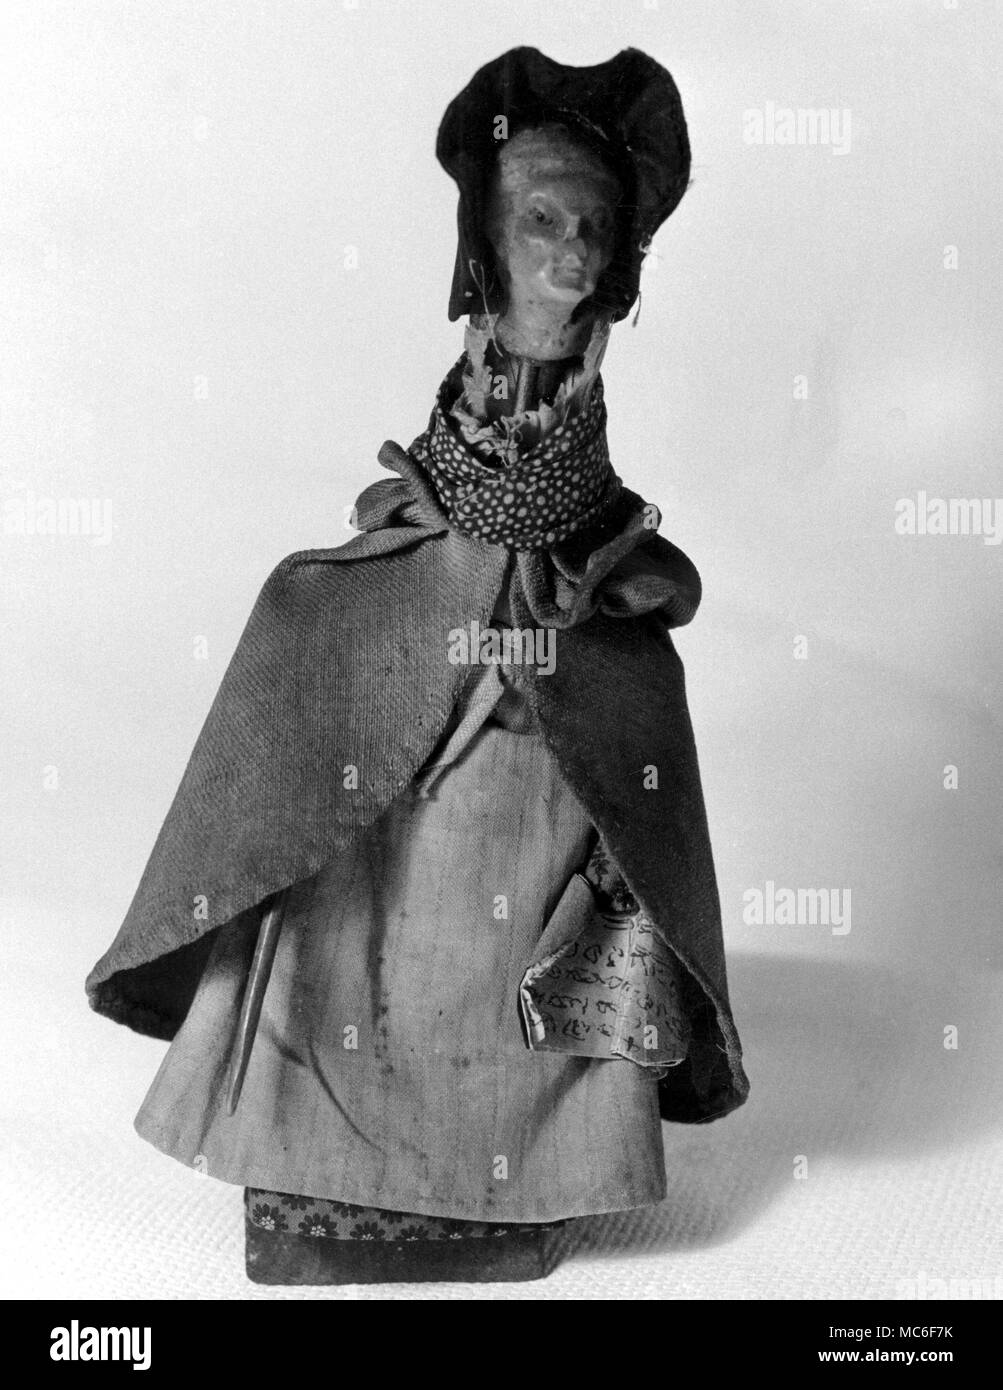 Valvola a fungo di strega, o maledizione-doll, probabilmente della fine del XVII o XVIII secolo. In Moyse's Hall Museum, Bury St Edmunds. Il 'spell' viene infilato nella parte anteriore della bambola mantello. Foto Stock